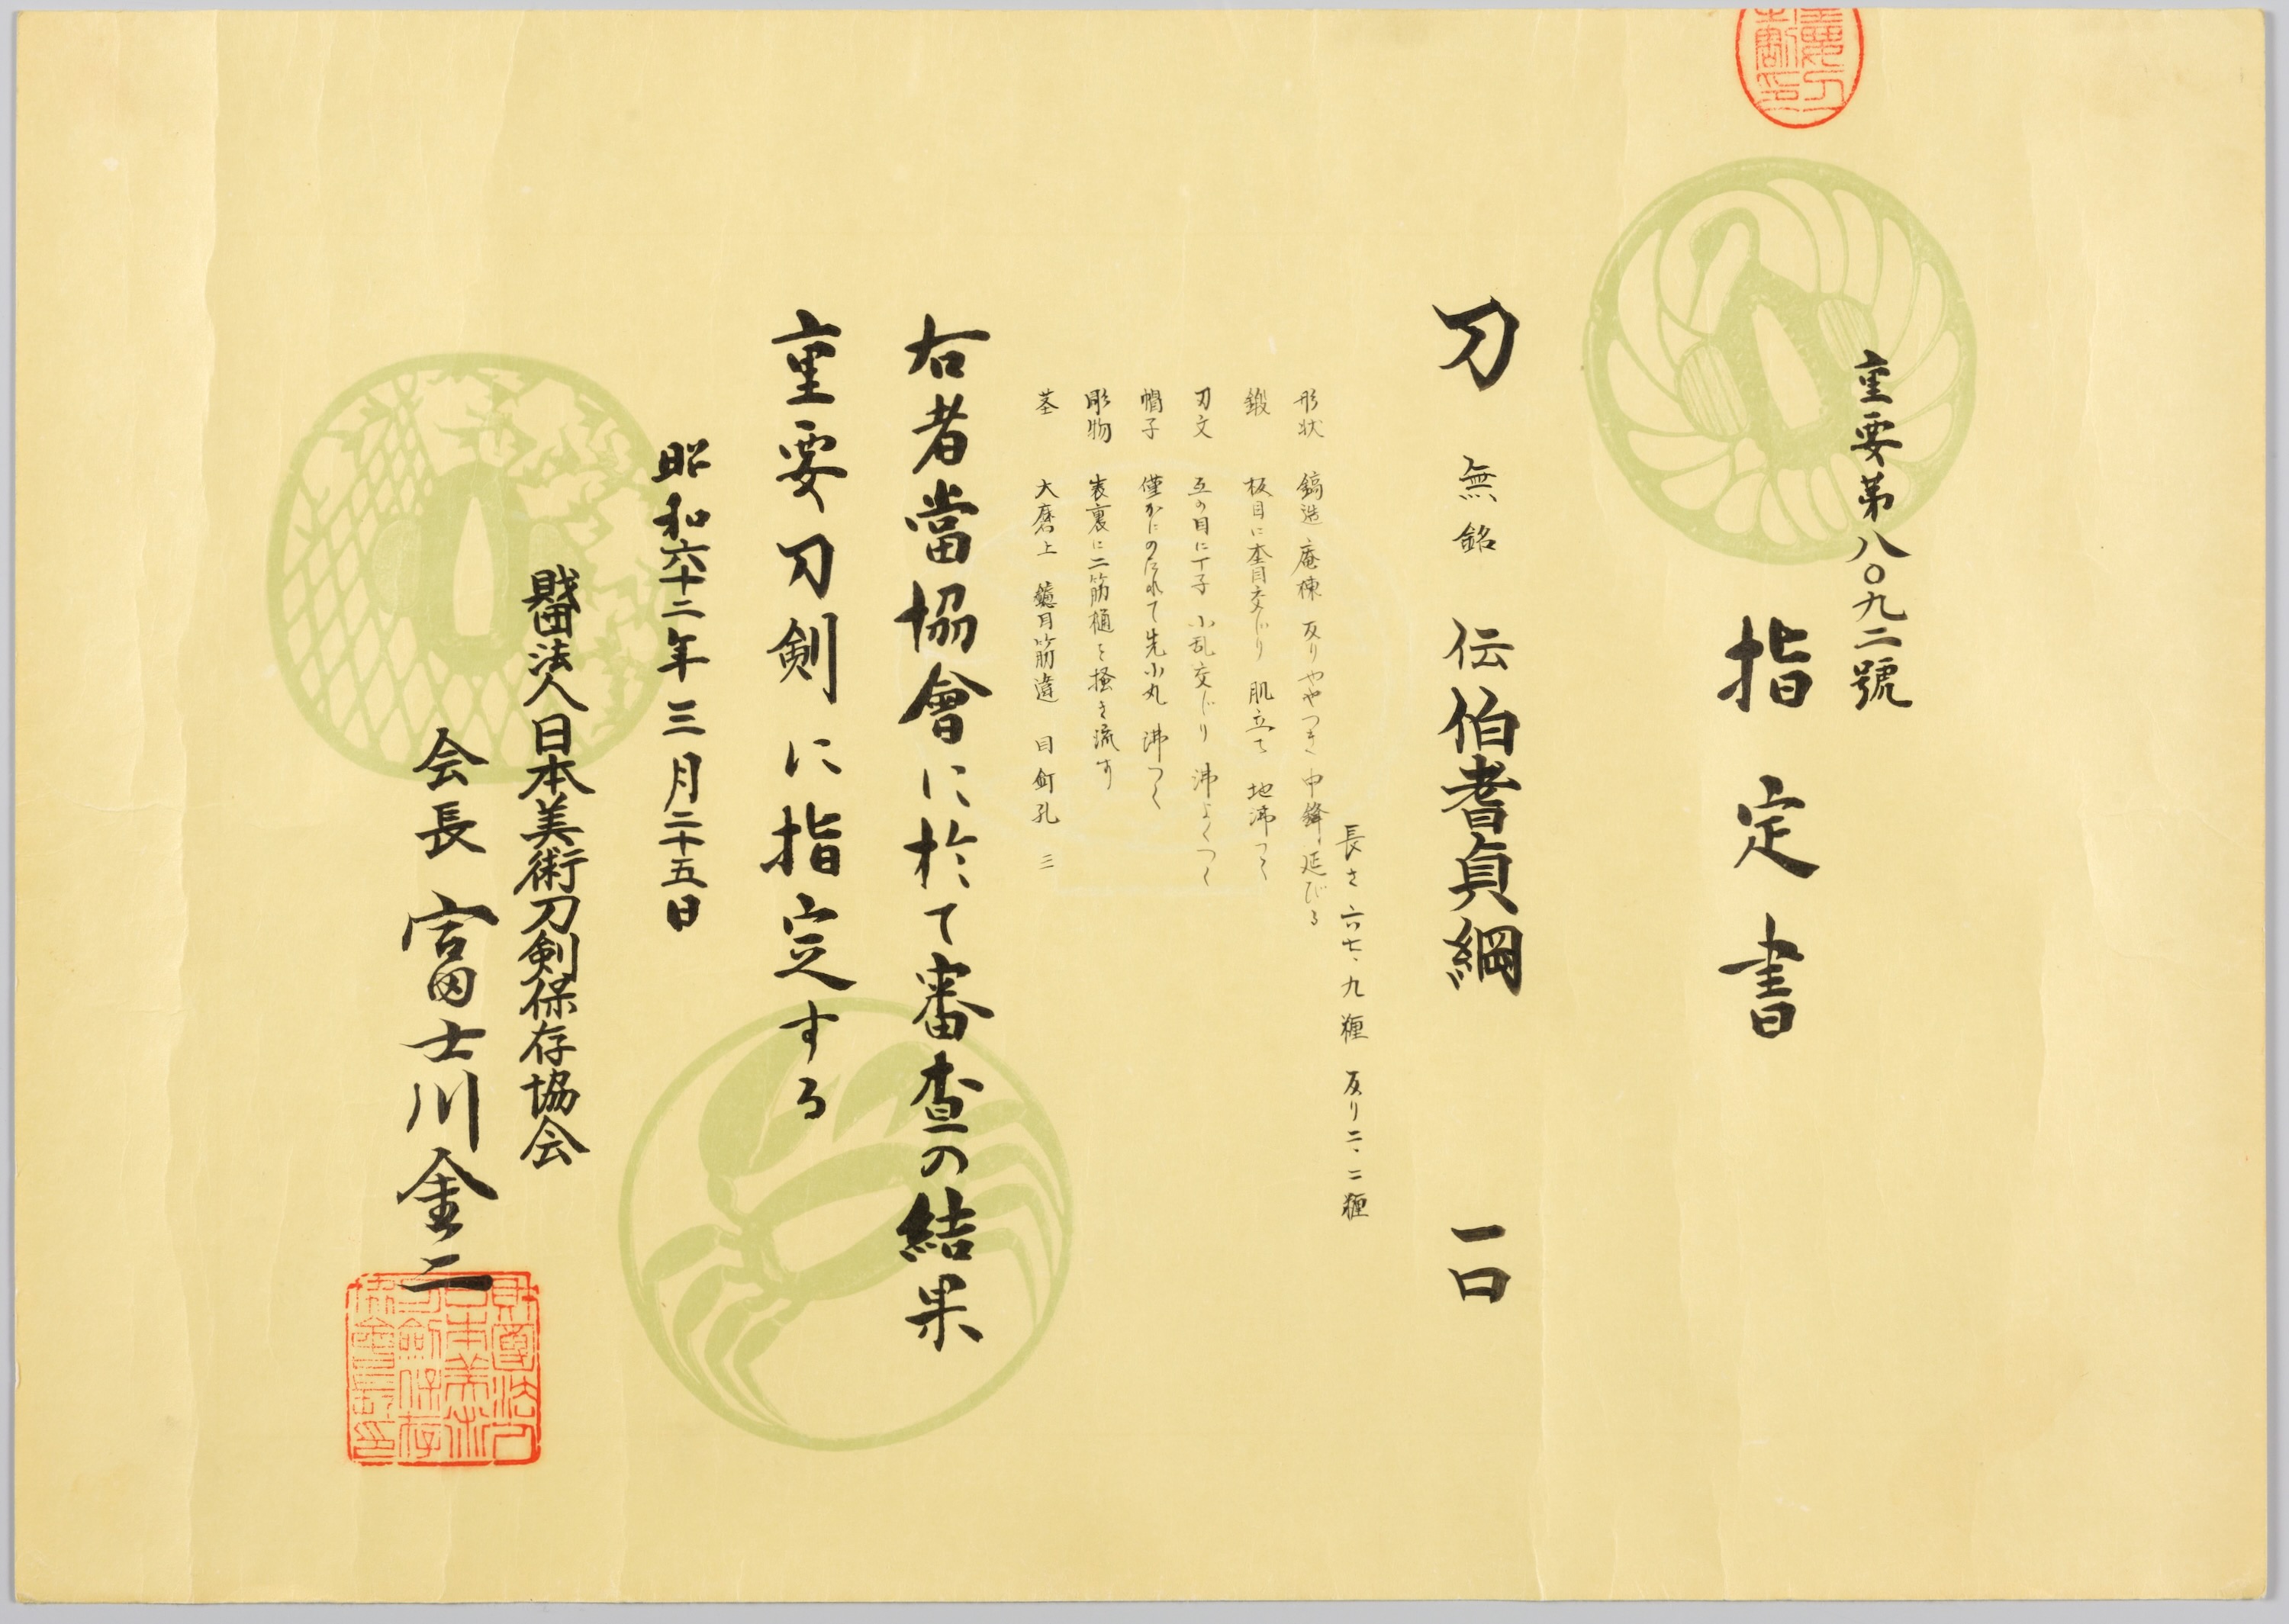 Ko-Hoki Juyo papers